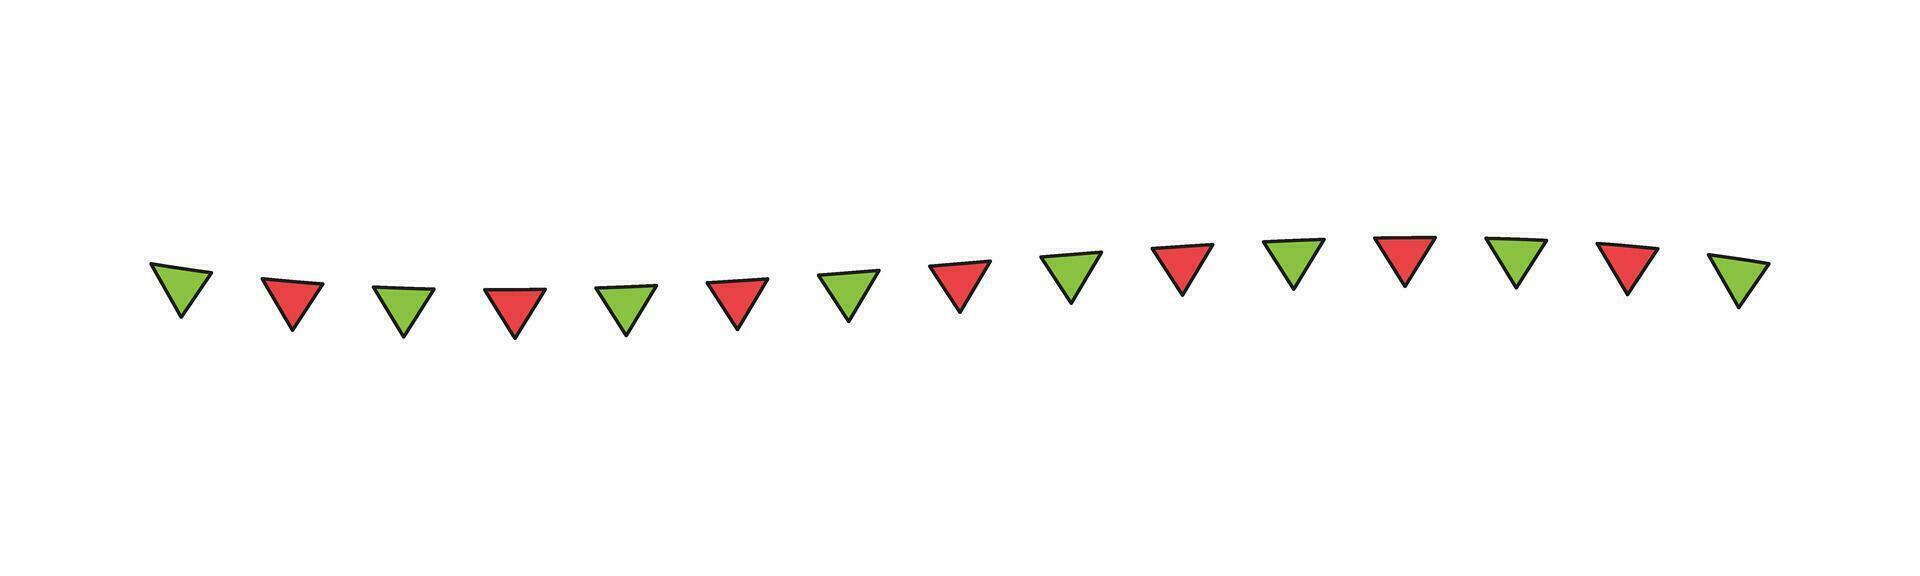 bandera separador frontera ilustración ondulado línea triángulo modelo para Navidad tema concepto para fiesta hora invierno temporada vector